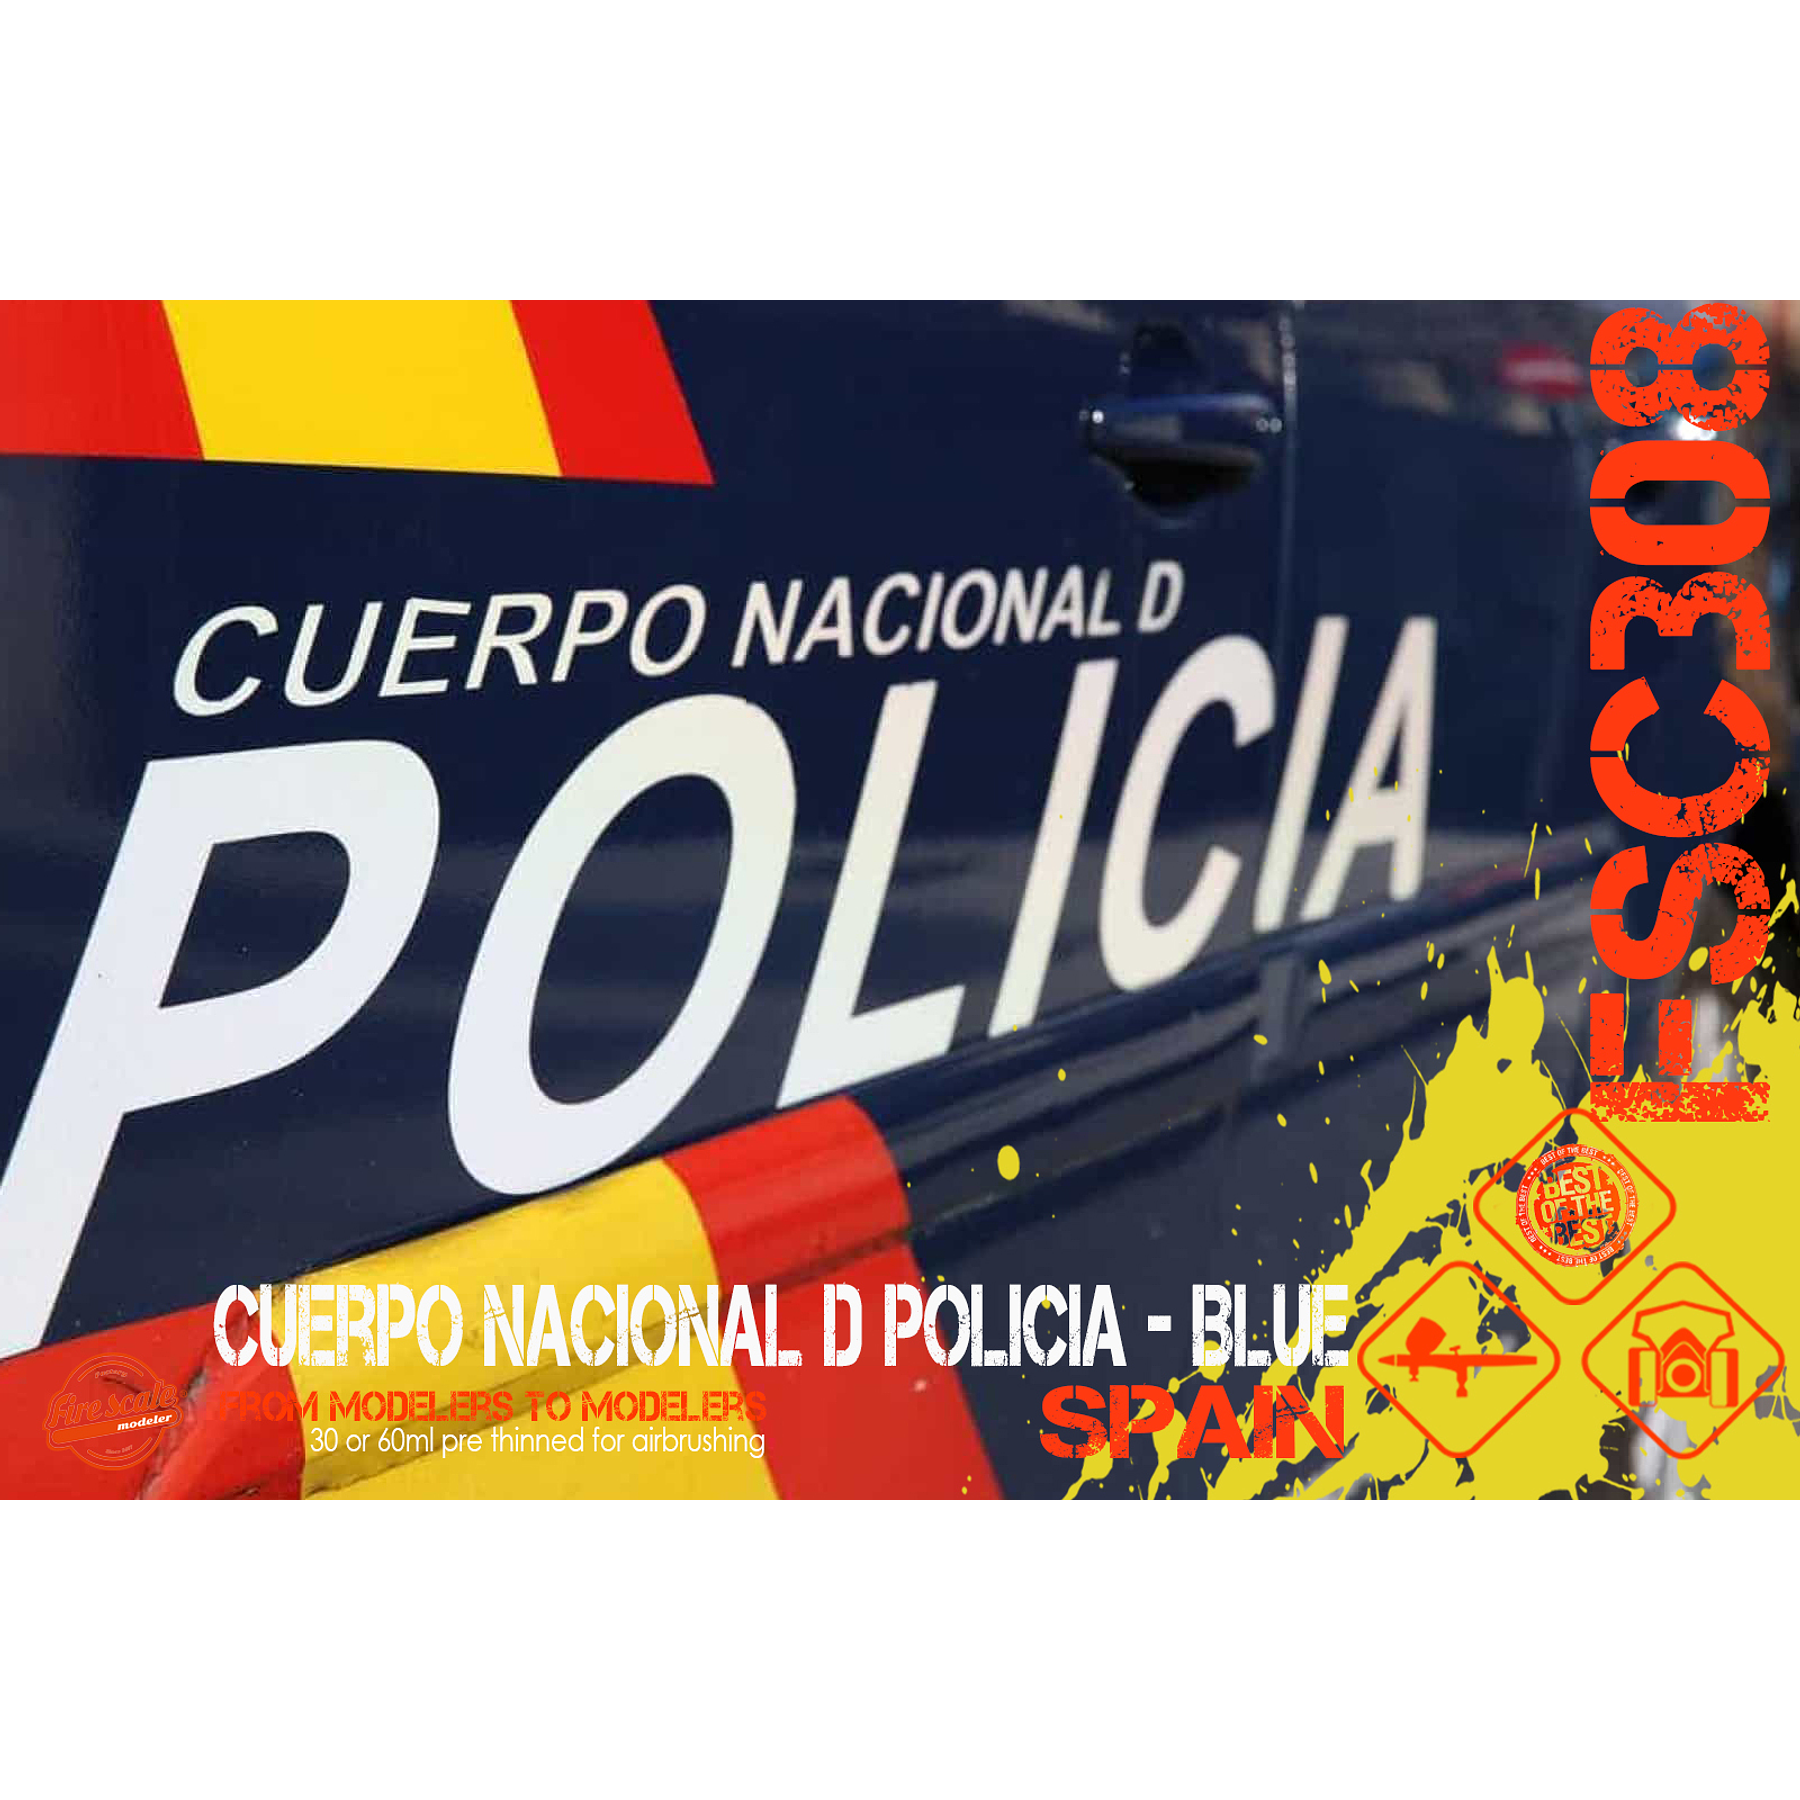 Cuerpo Nacional D Policia Spain - Blue